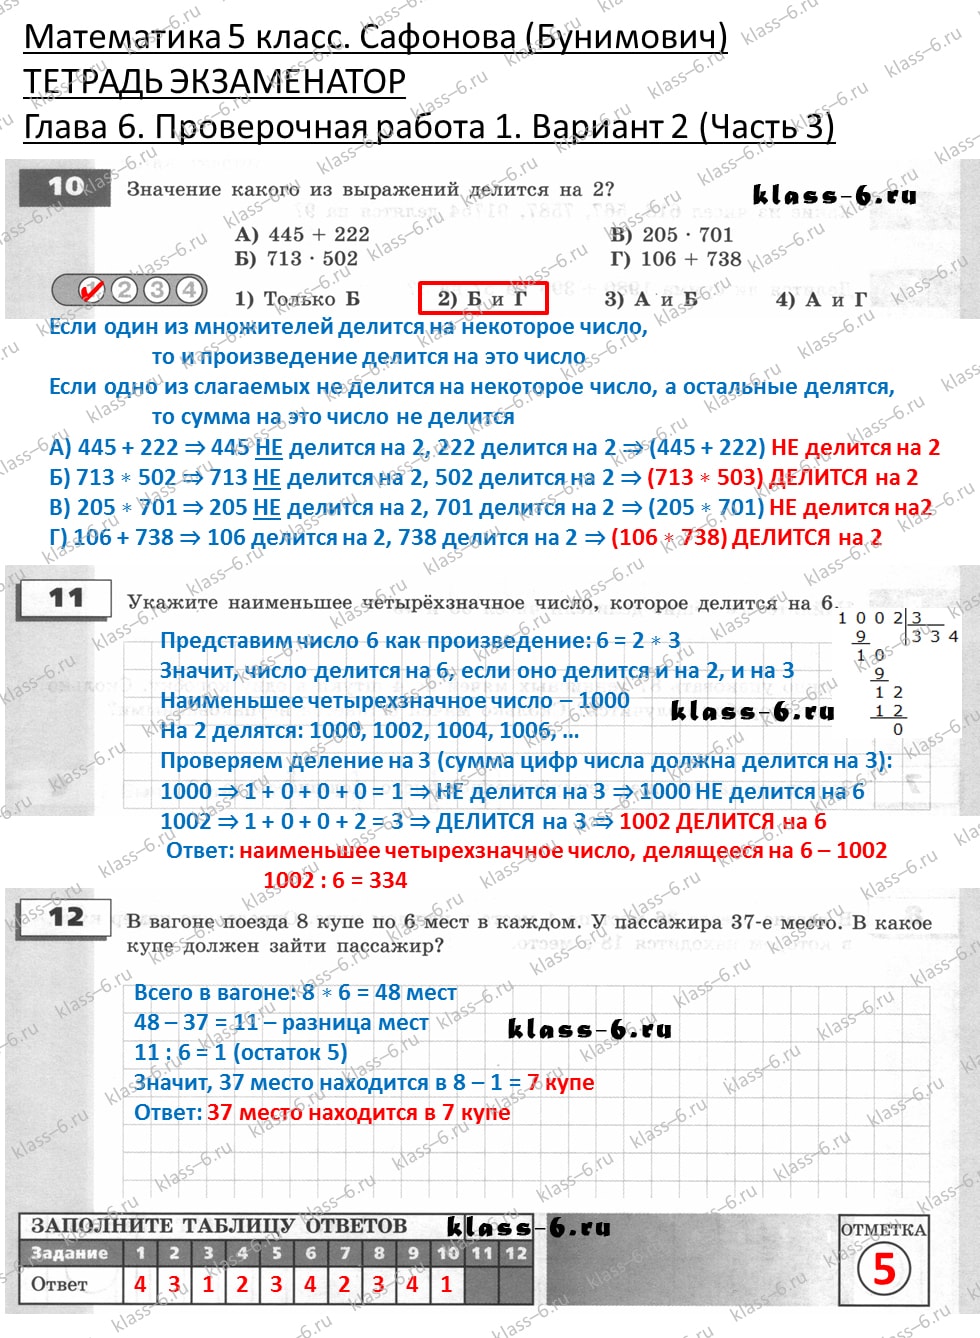 решебник и гдз по математике тетрадь экзаменатор Сафонова, Бунимович 5 класс глава 6 контрольная работа 1 вариант 2 (3)